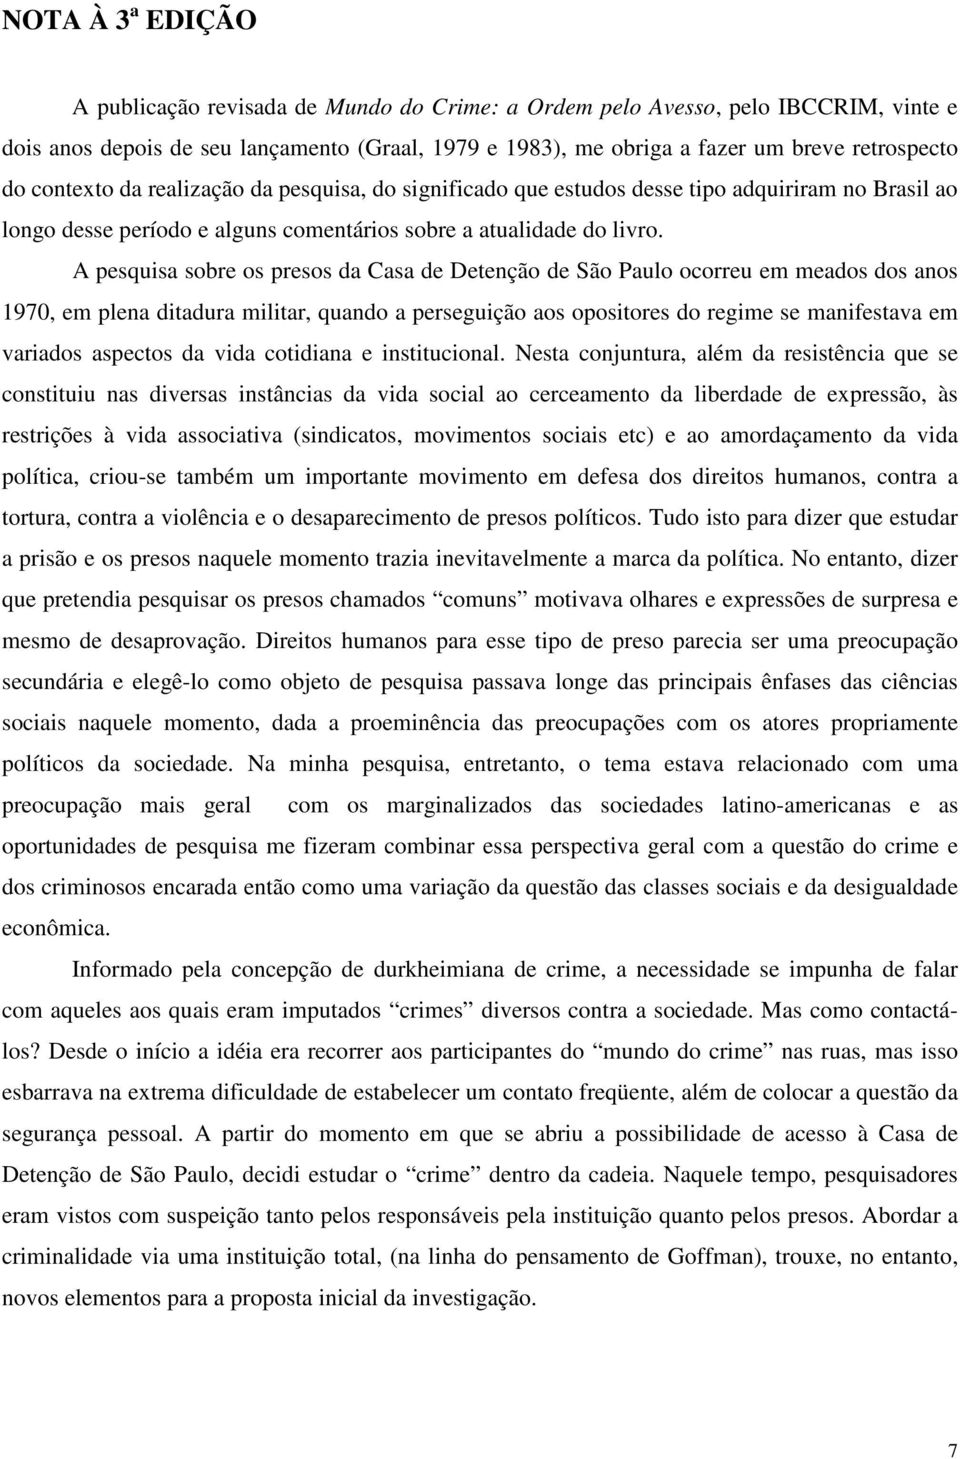 A pesquisa sobre os presos da Casa de Detenção de São Paulo ocorreu em meados dos anos 1970, em plena ditadura militar, quando a perseguição aos opositores do regime se manifestava em variados